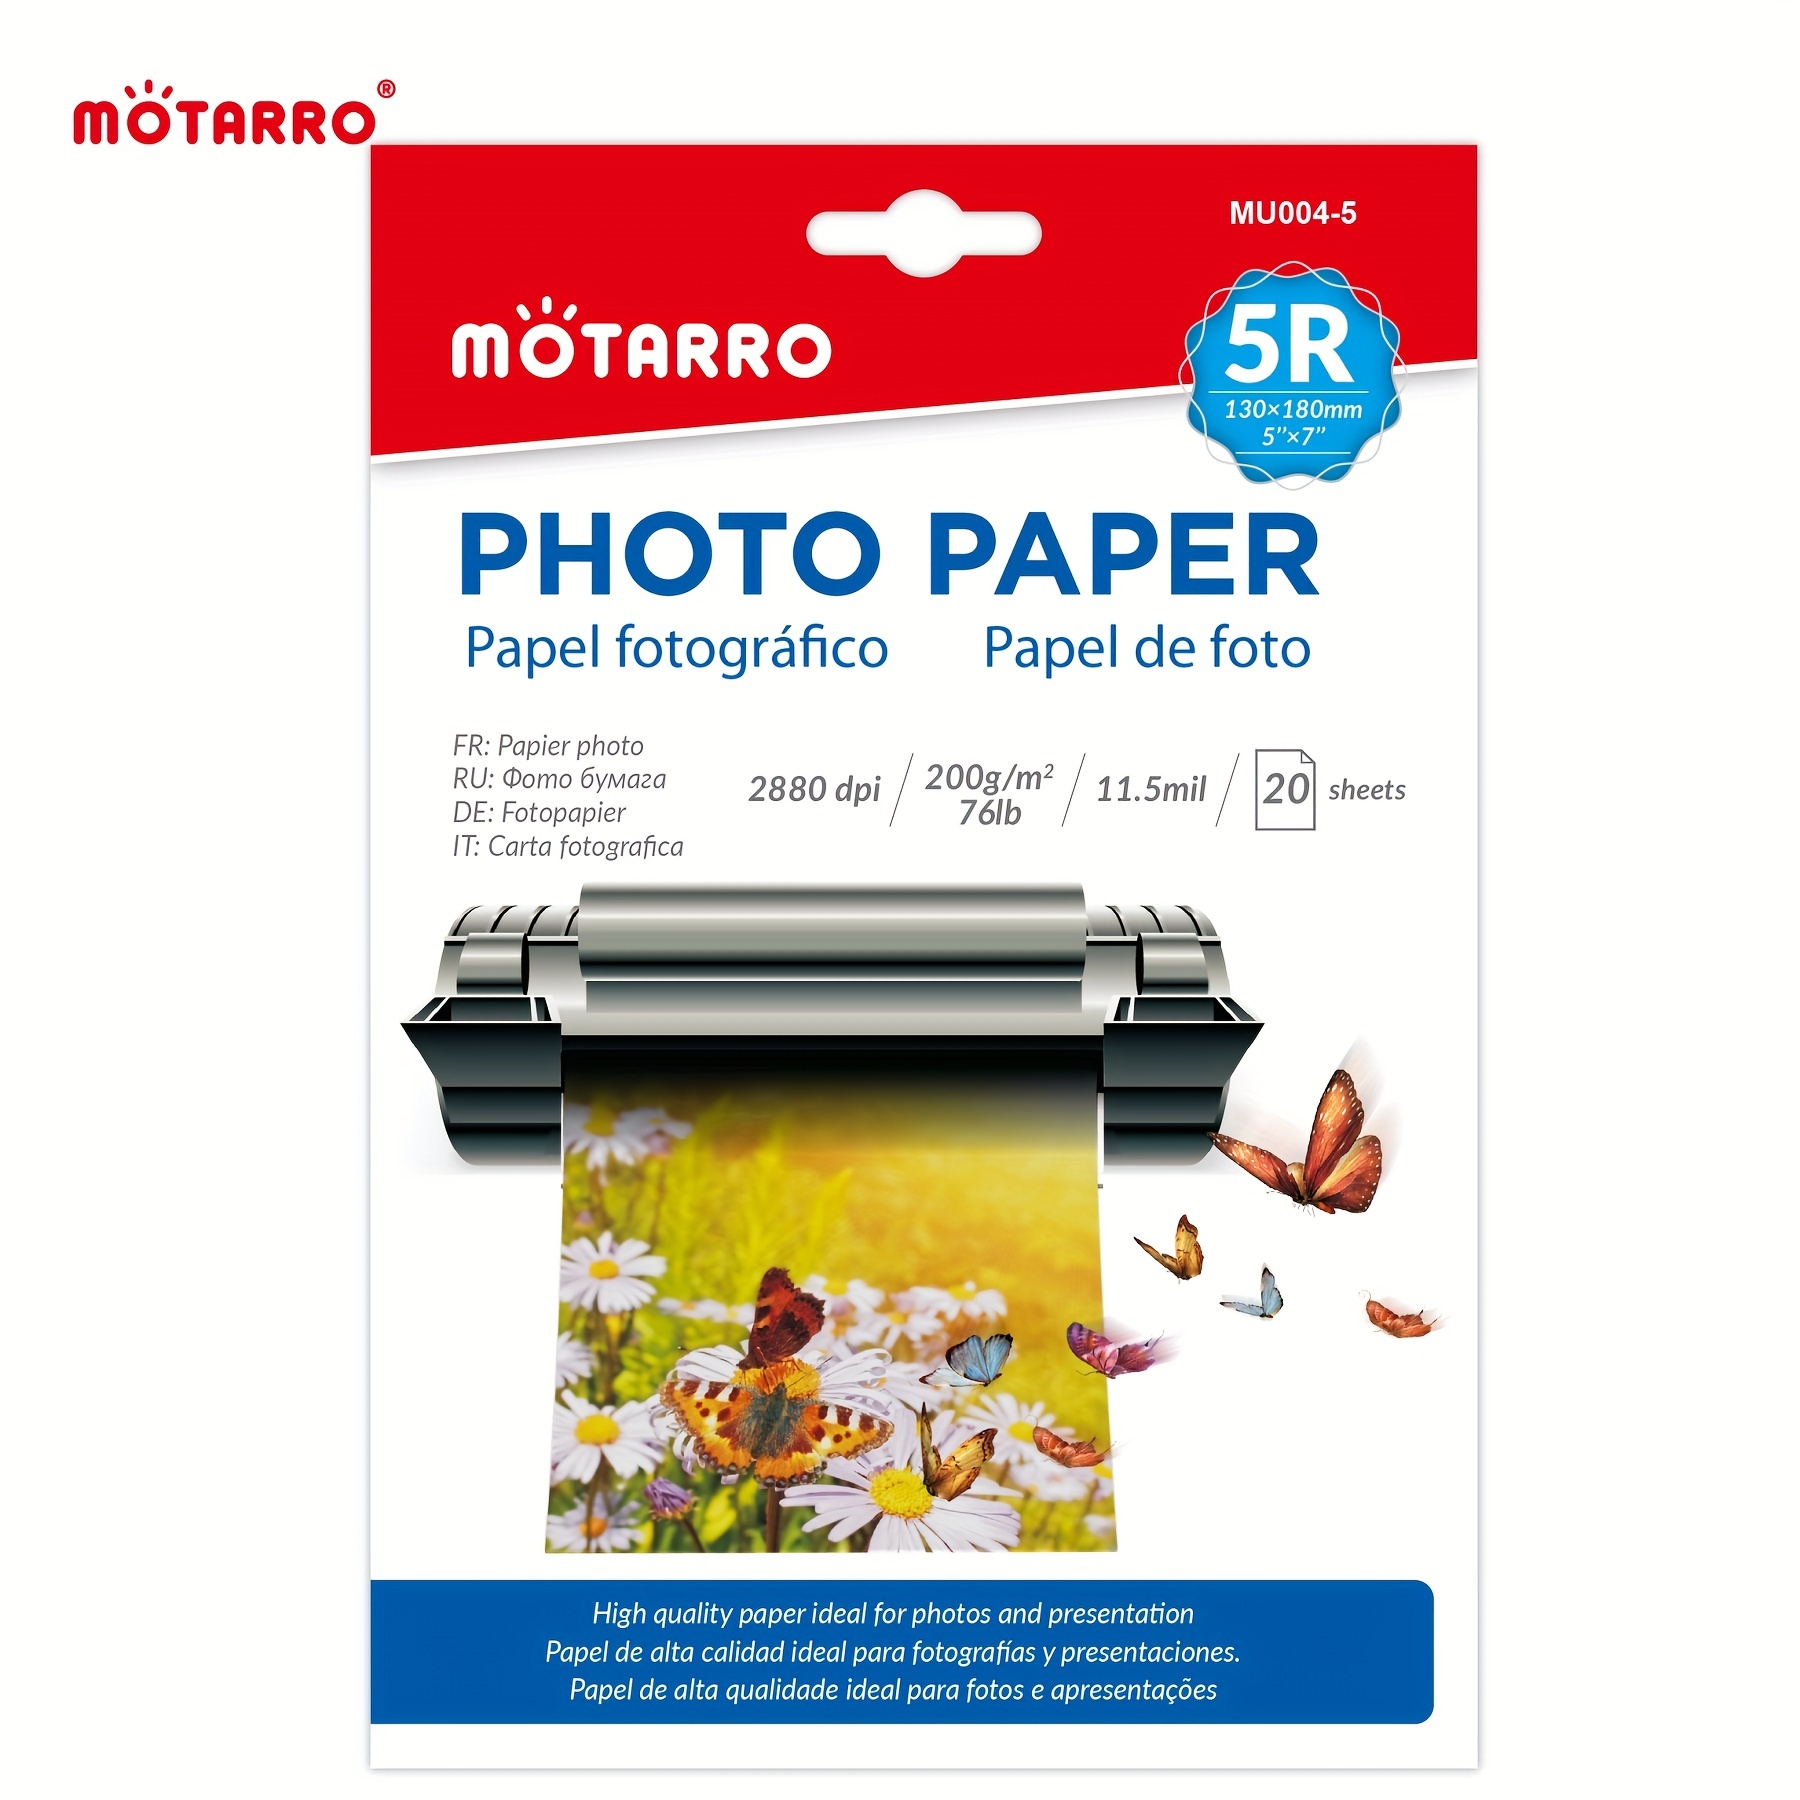 50 feuilles de papier photo brillant A4 240 g qualité premium jet